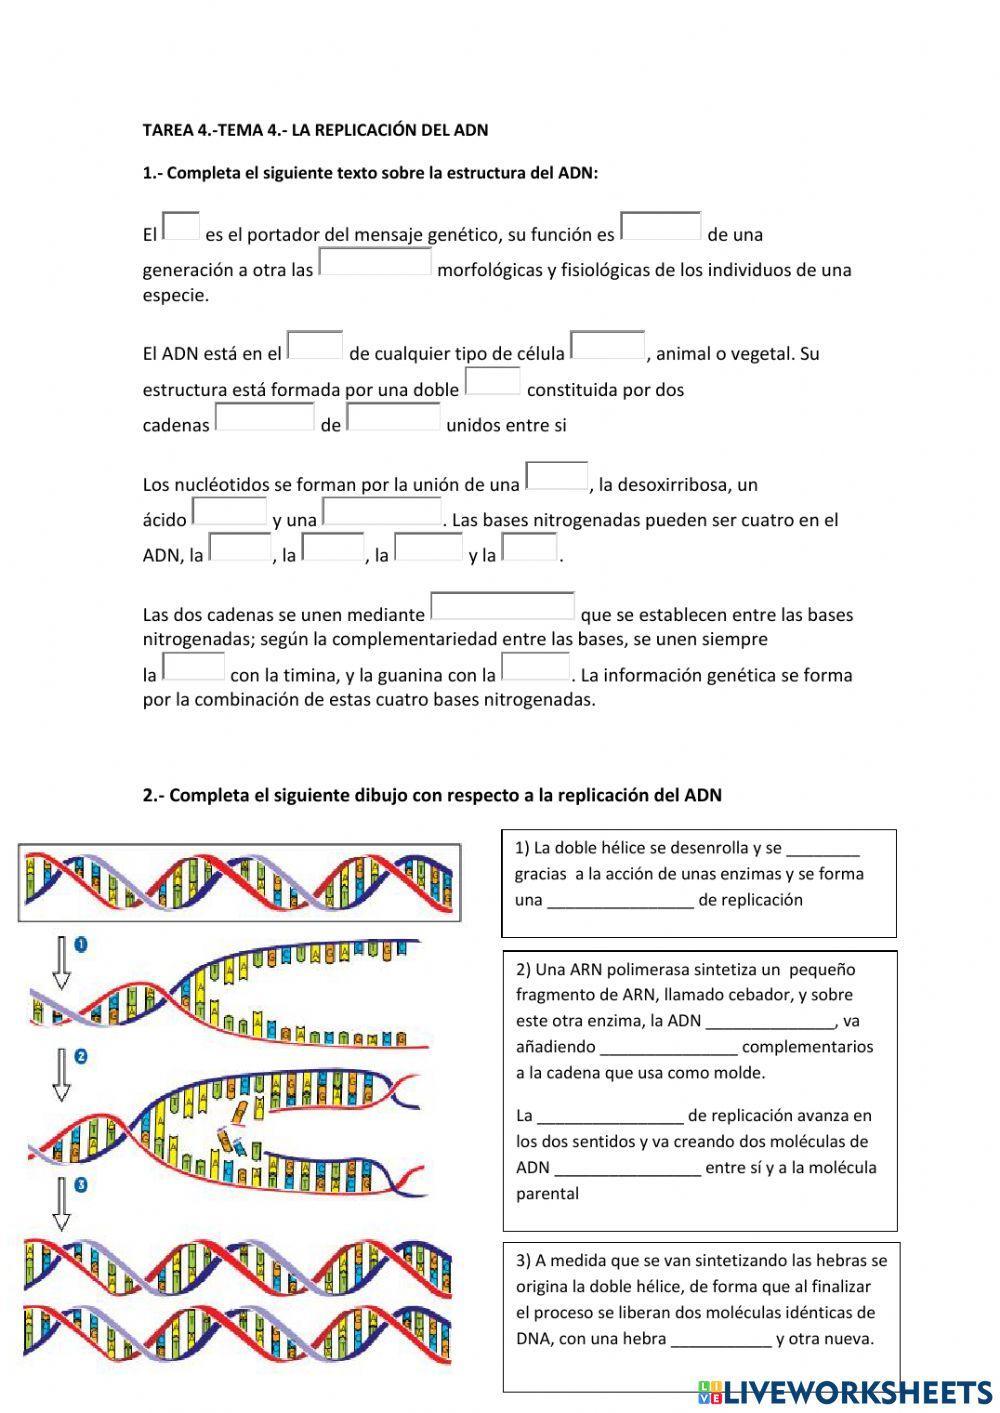 La replicación del ADN